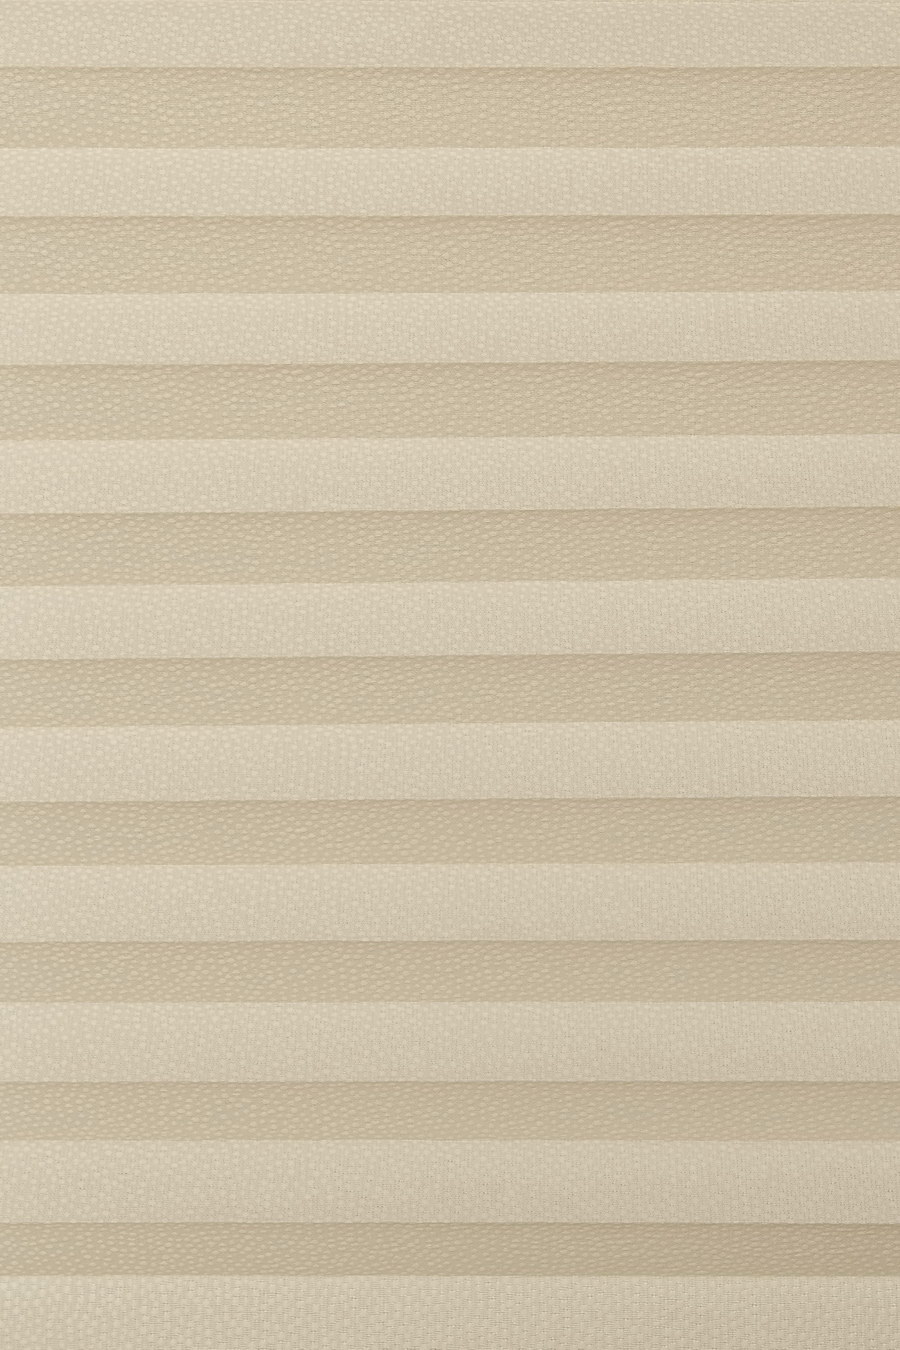 Ткань MERISA creme-stone 30612 для штор плиссе